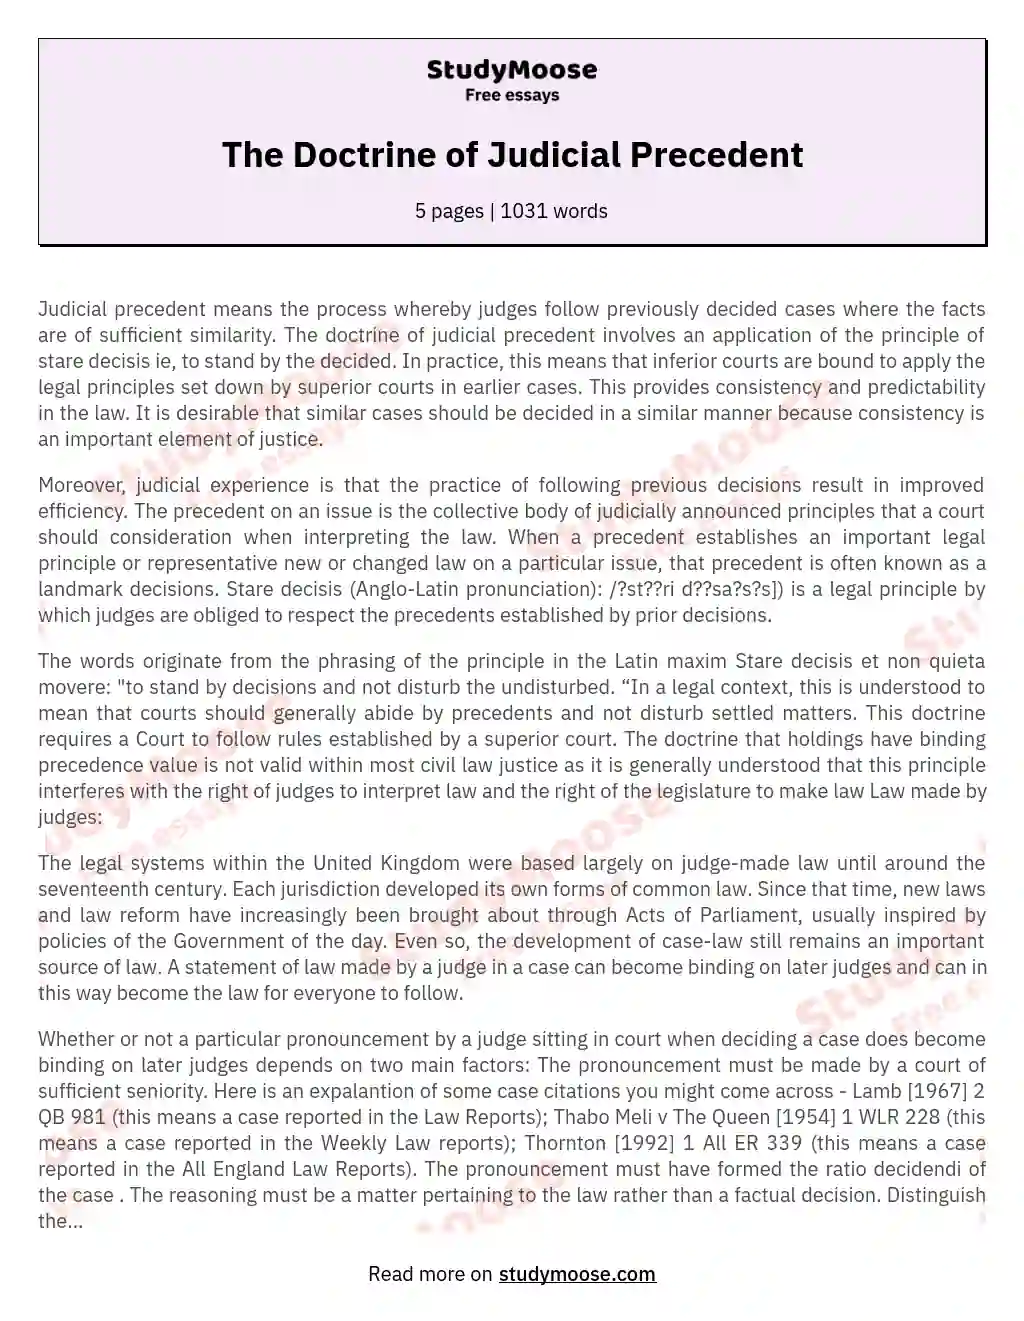 The Doctrine of Judicial Precedent essay